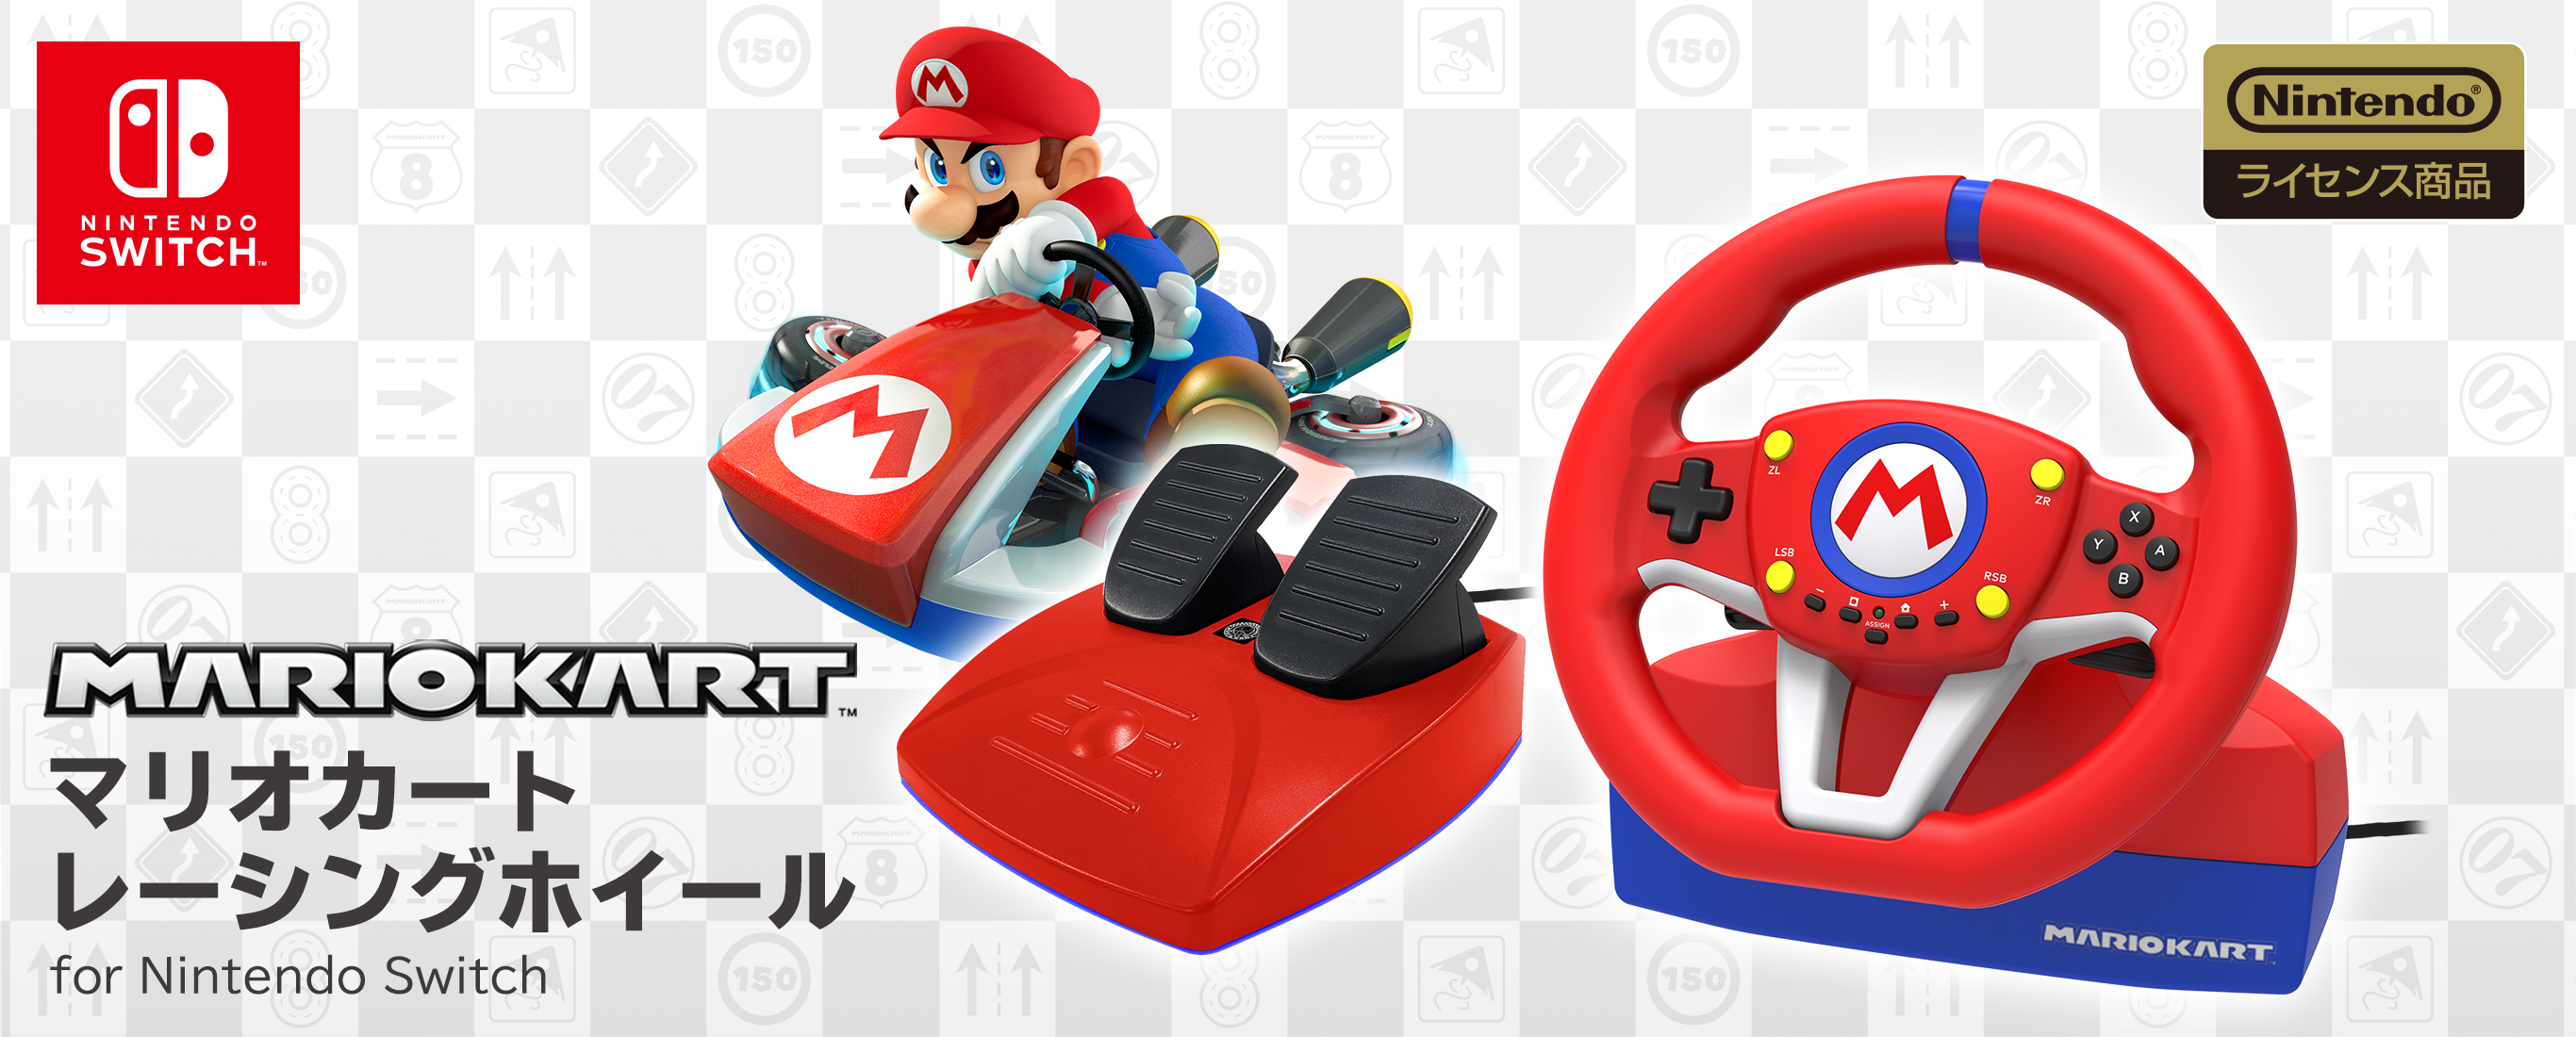 株式会社 HORI | マリオカートレーシングホイール for Nintendo Switch